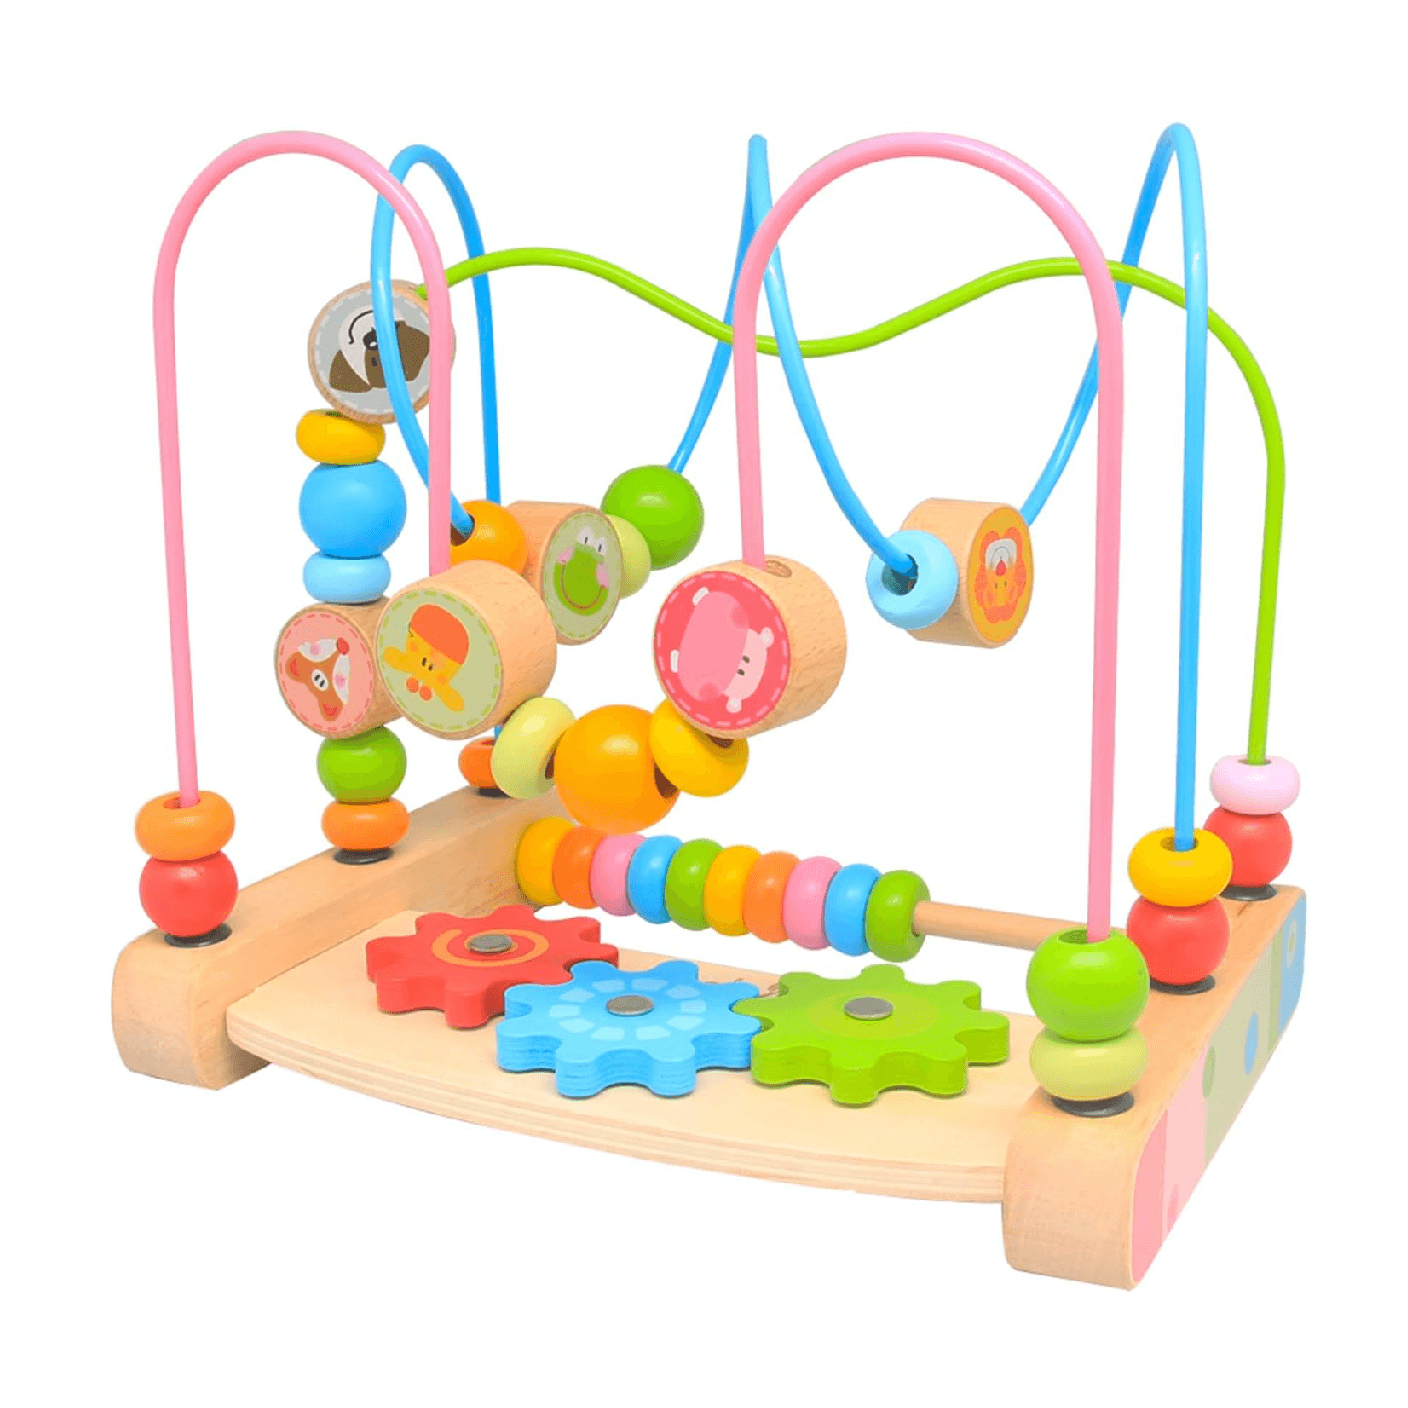 Montessori bead maze